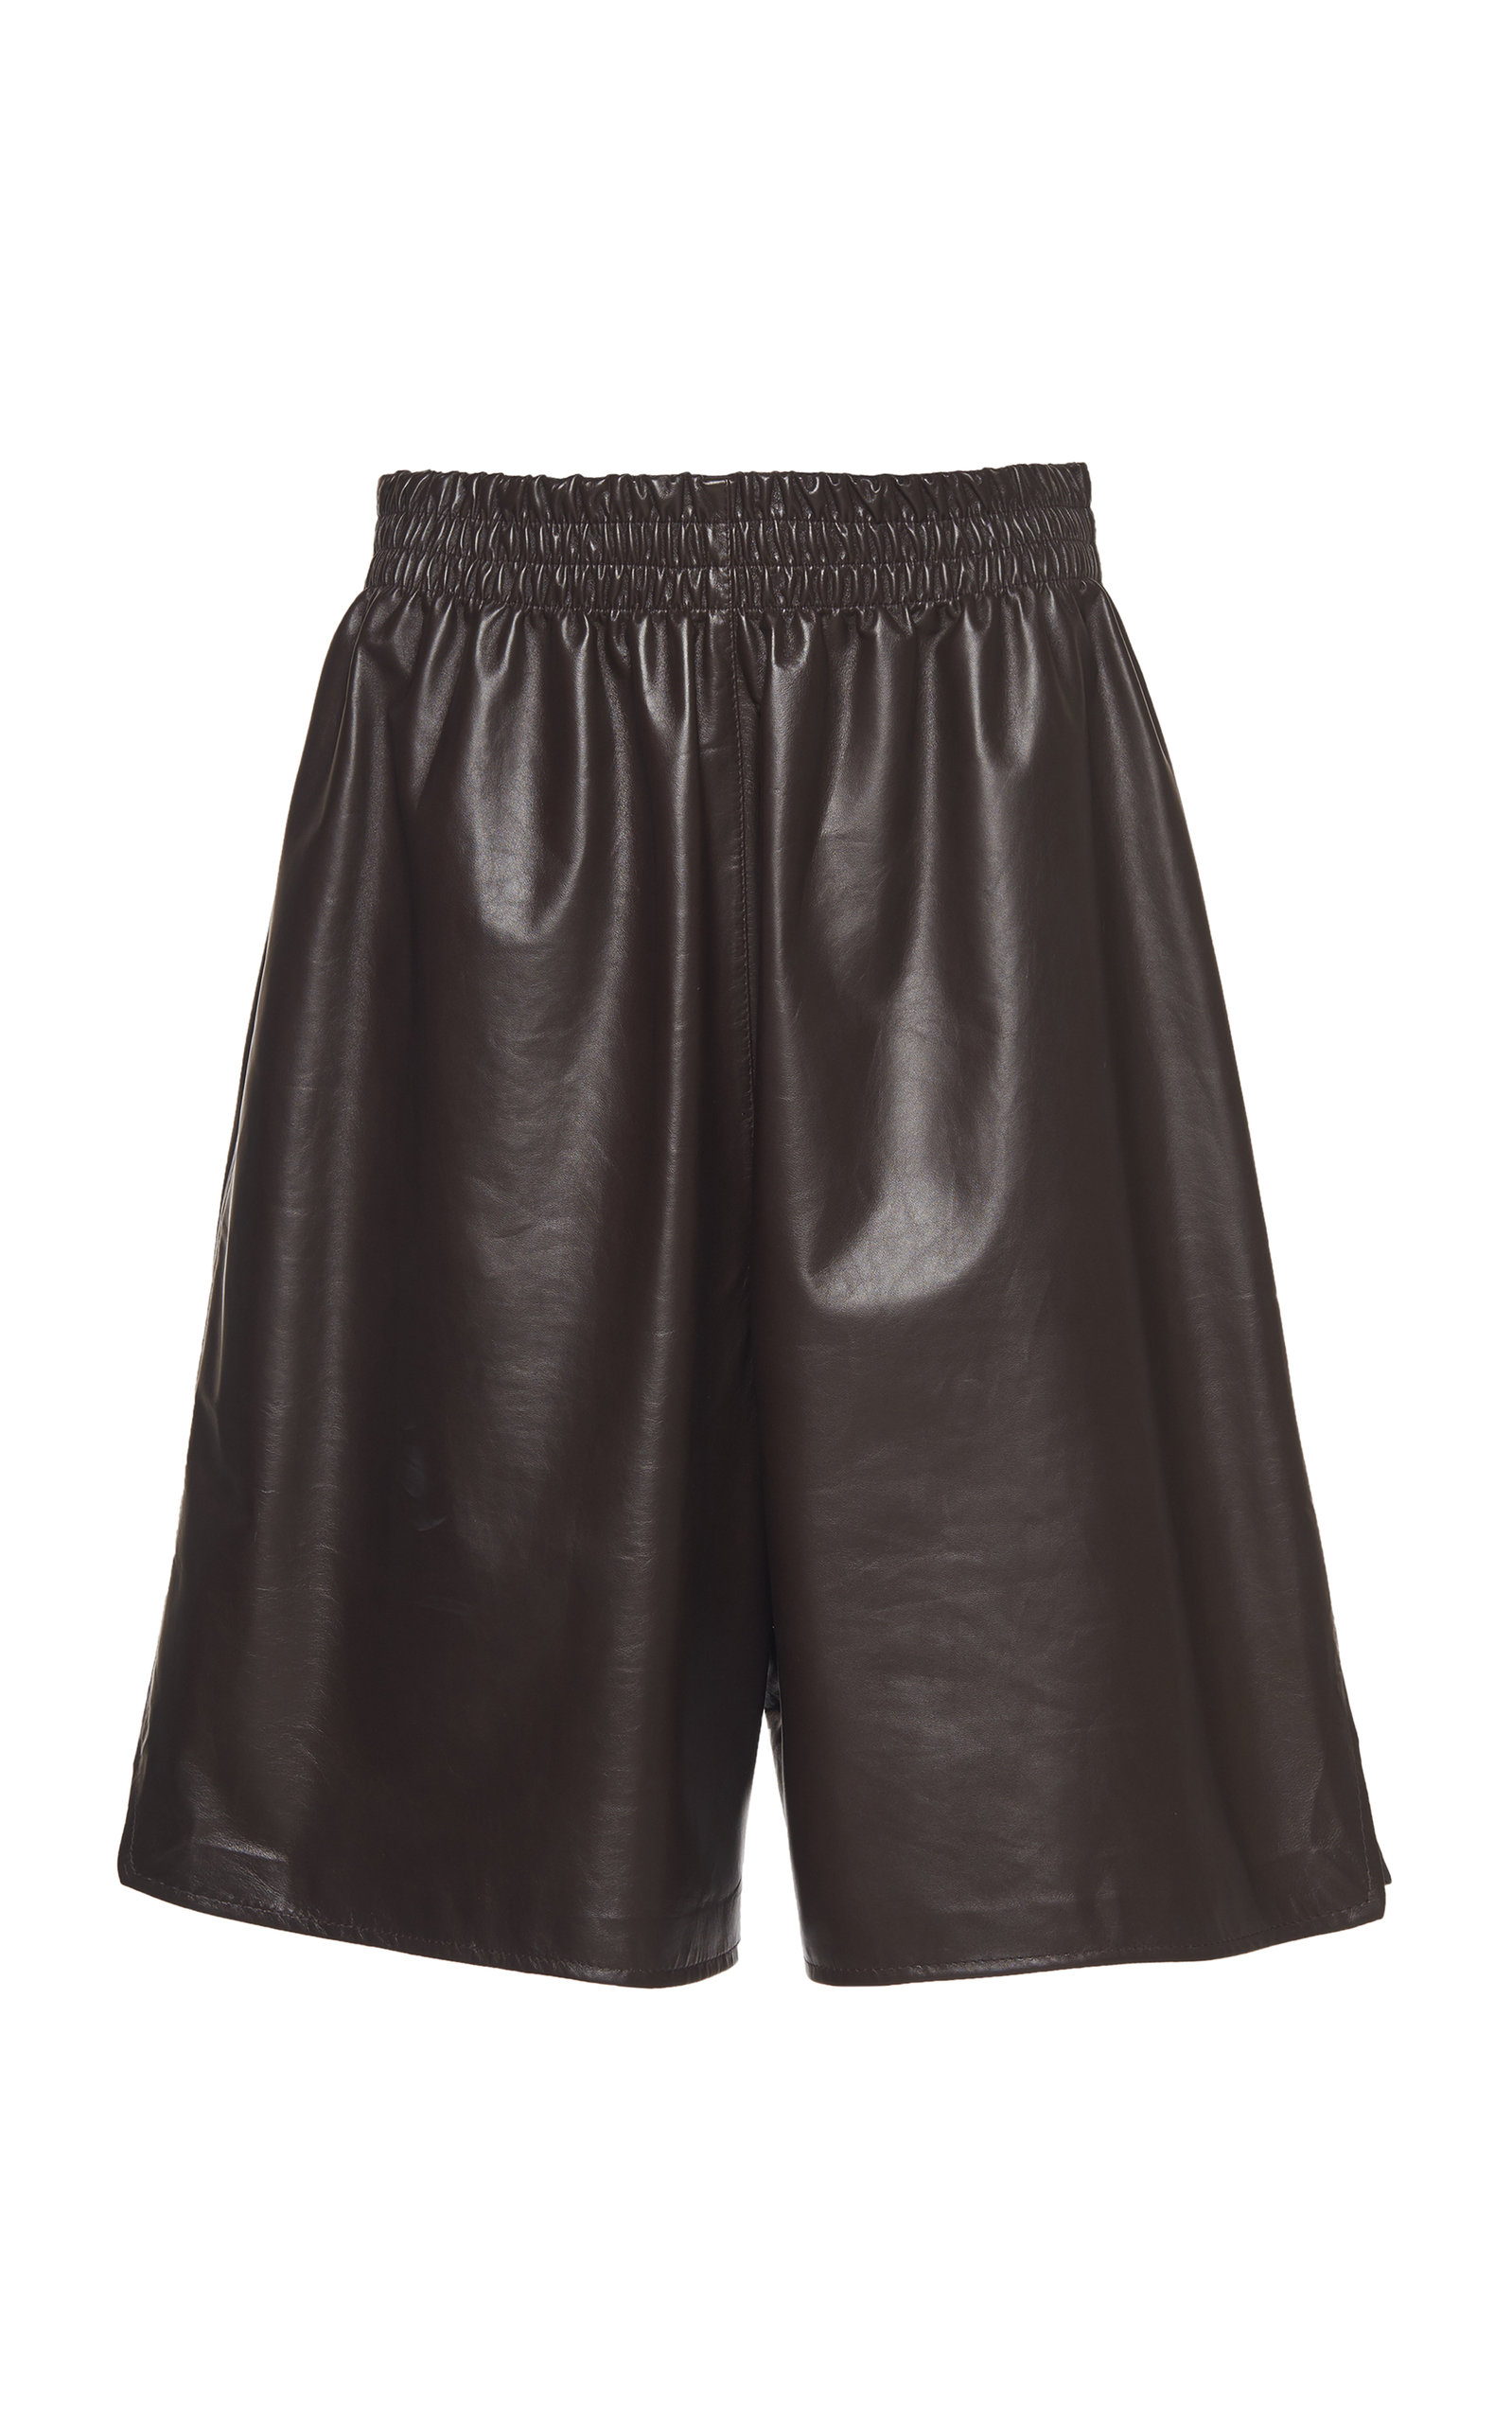 Bottega Veneta Women's Long Leather Shorts